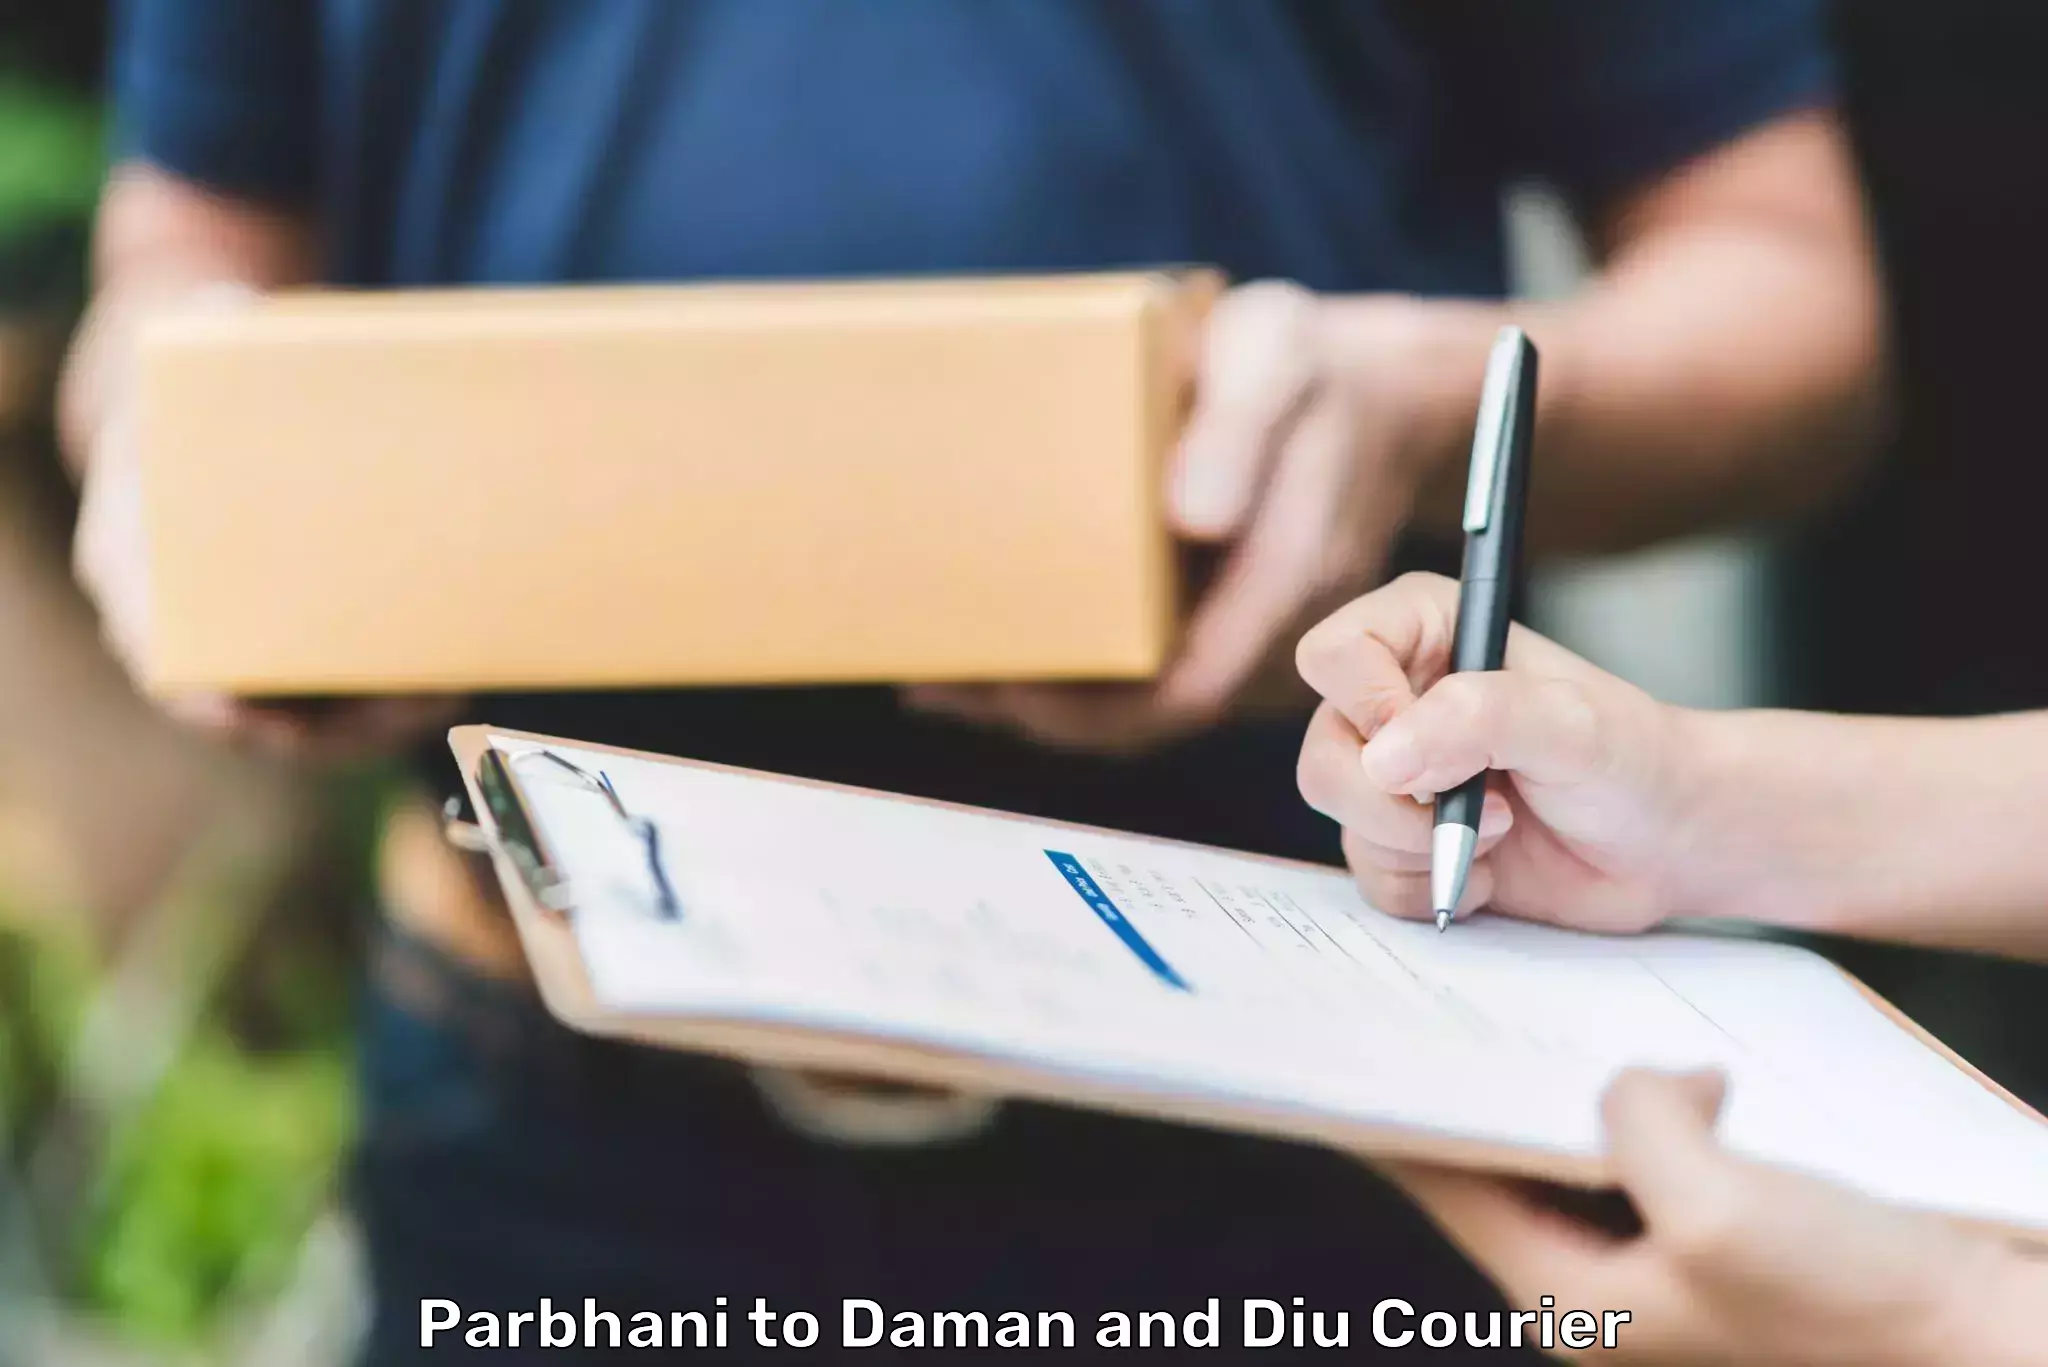 Express postal services Parbhani to Daman and Diu